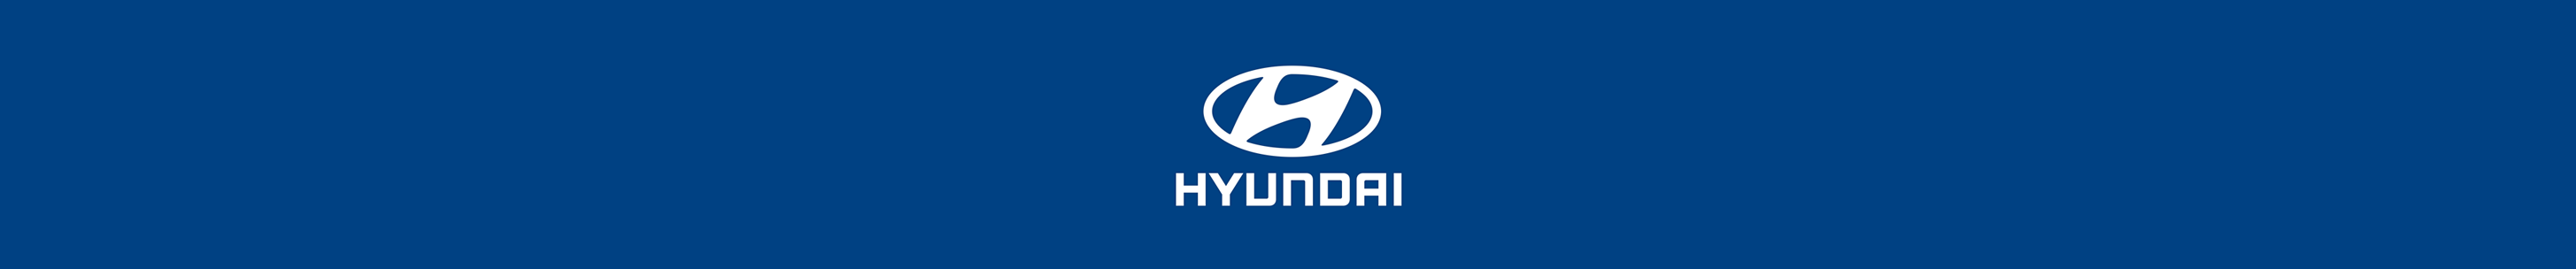 Globe Motors - Hyundai